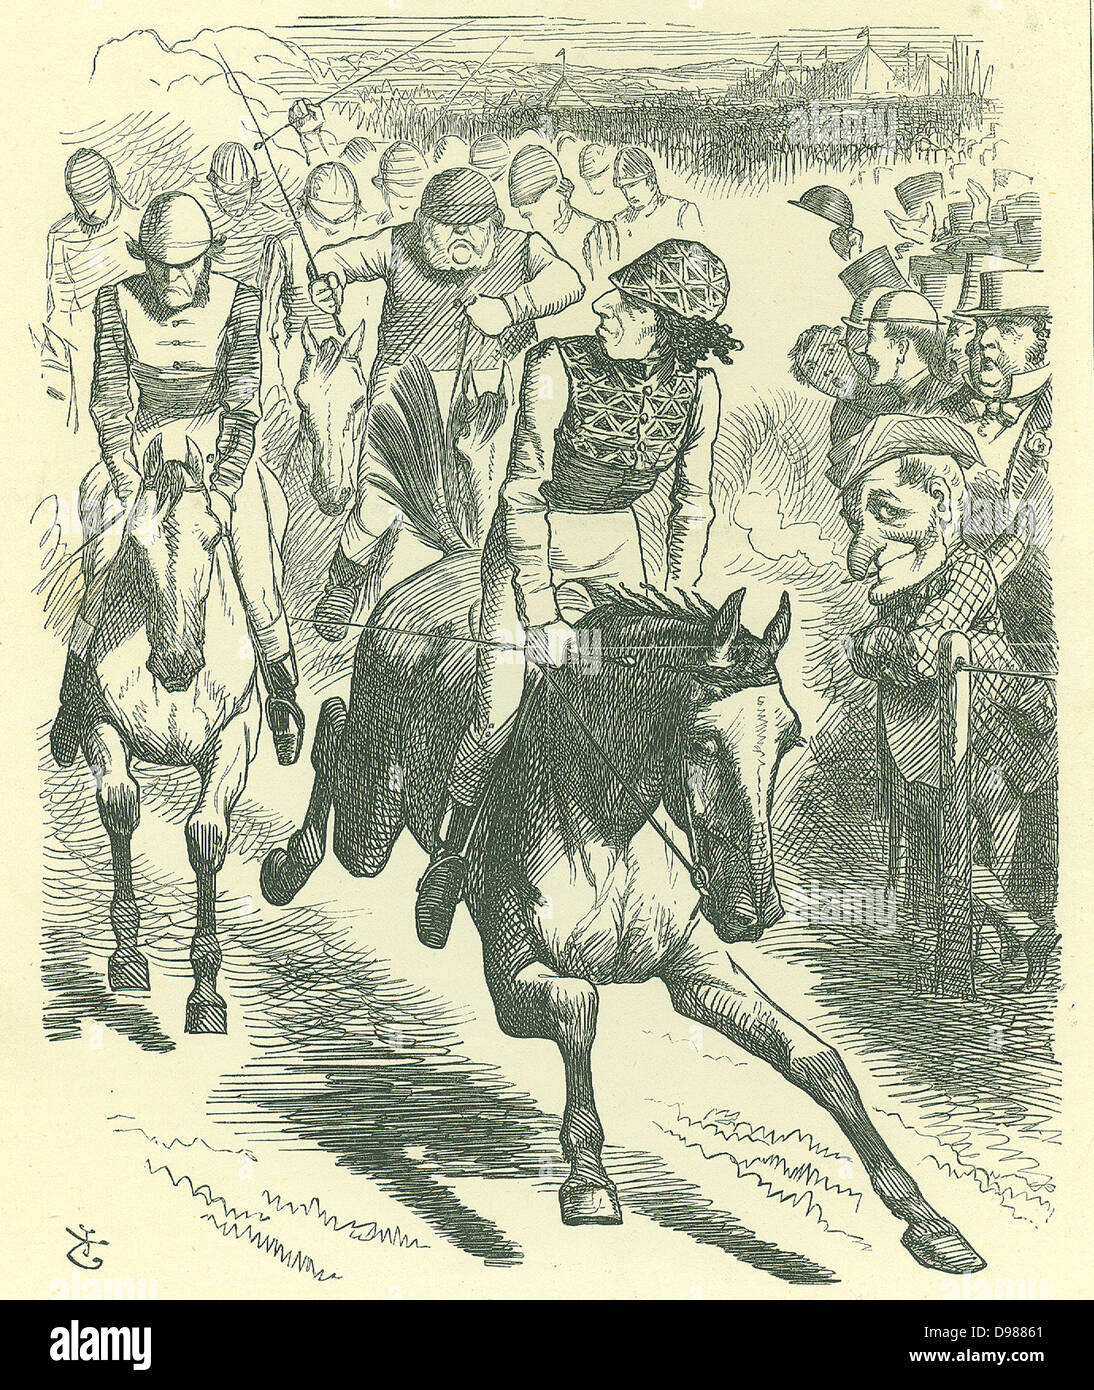 Le Derby de 1867. Dizzy gagne avec "Réforme de loi'' : Disraeli a introduit un nouveau projet de loi de réforme en 1867. John Tenniel caricature de 'Punch', Londres, 25 mai 1867 montrant Disraeli Gladstone à battre au poteau. Banque D'Images